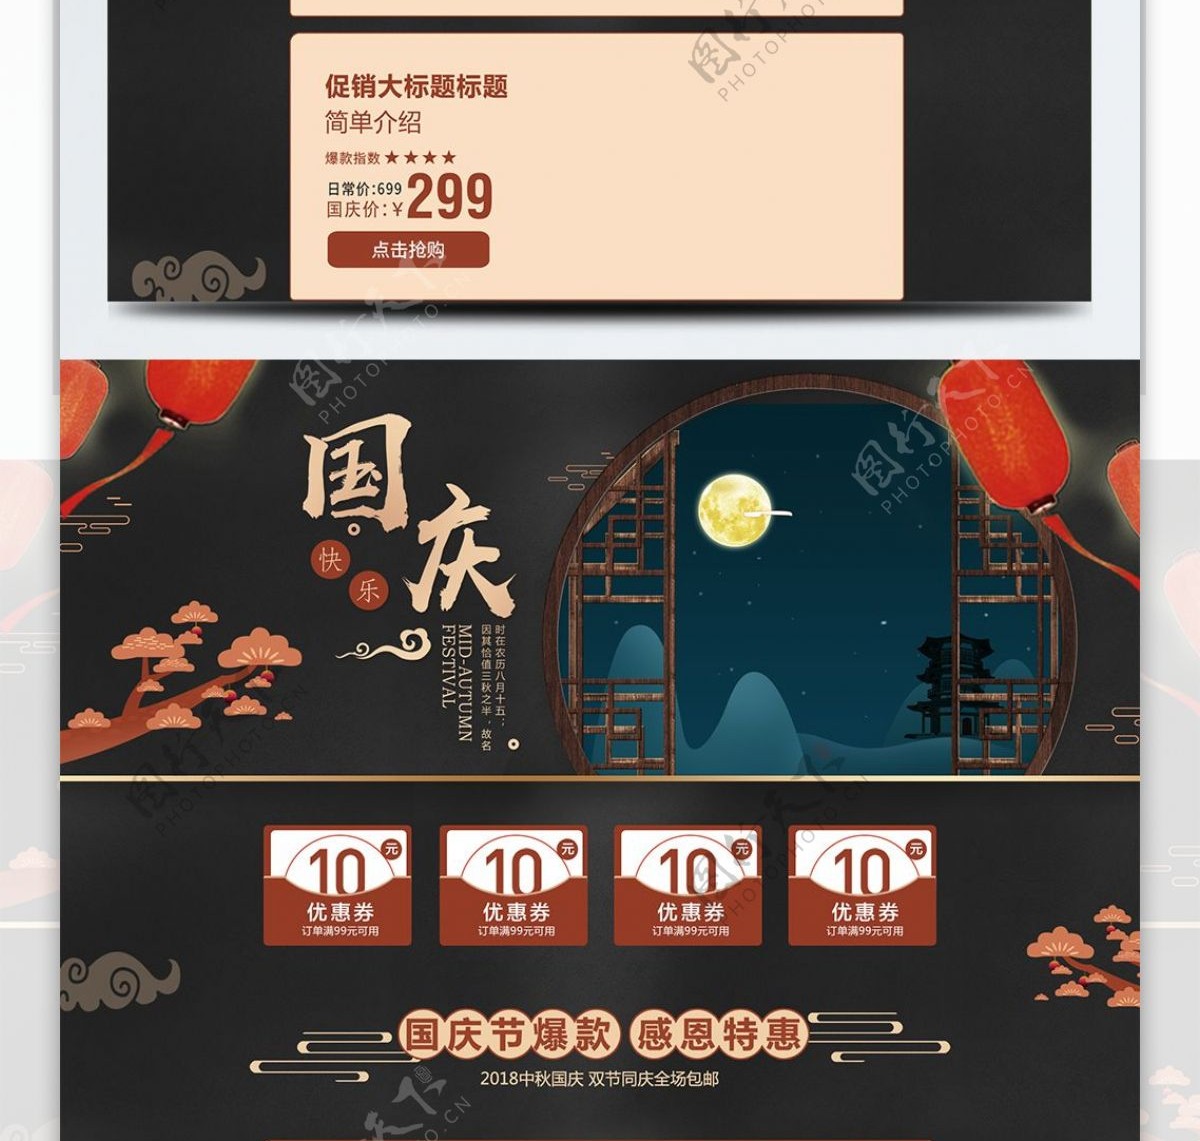 黑色传统中国风国庆节首页模板